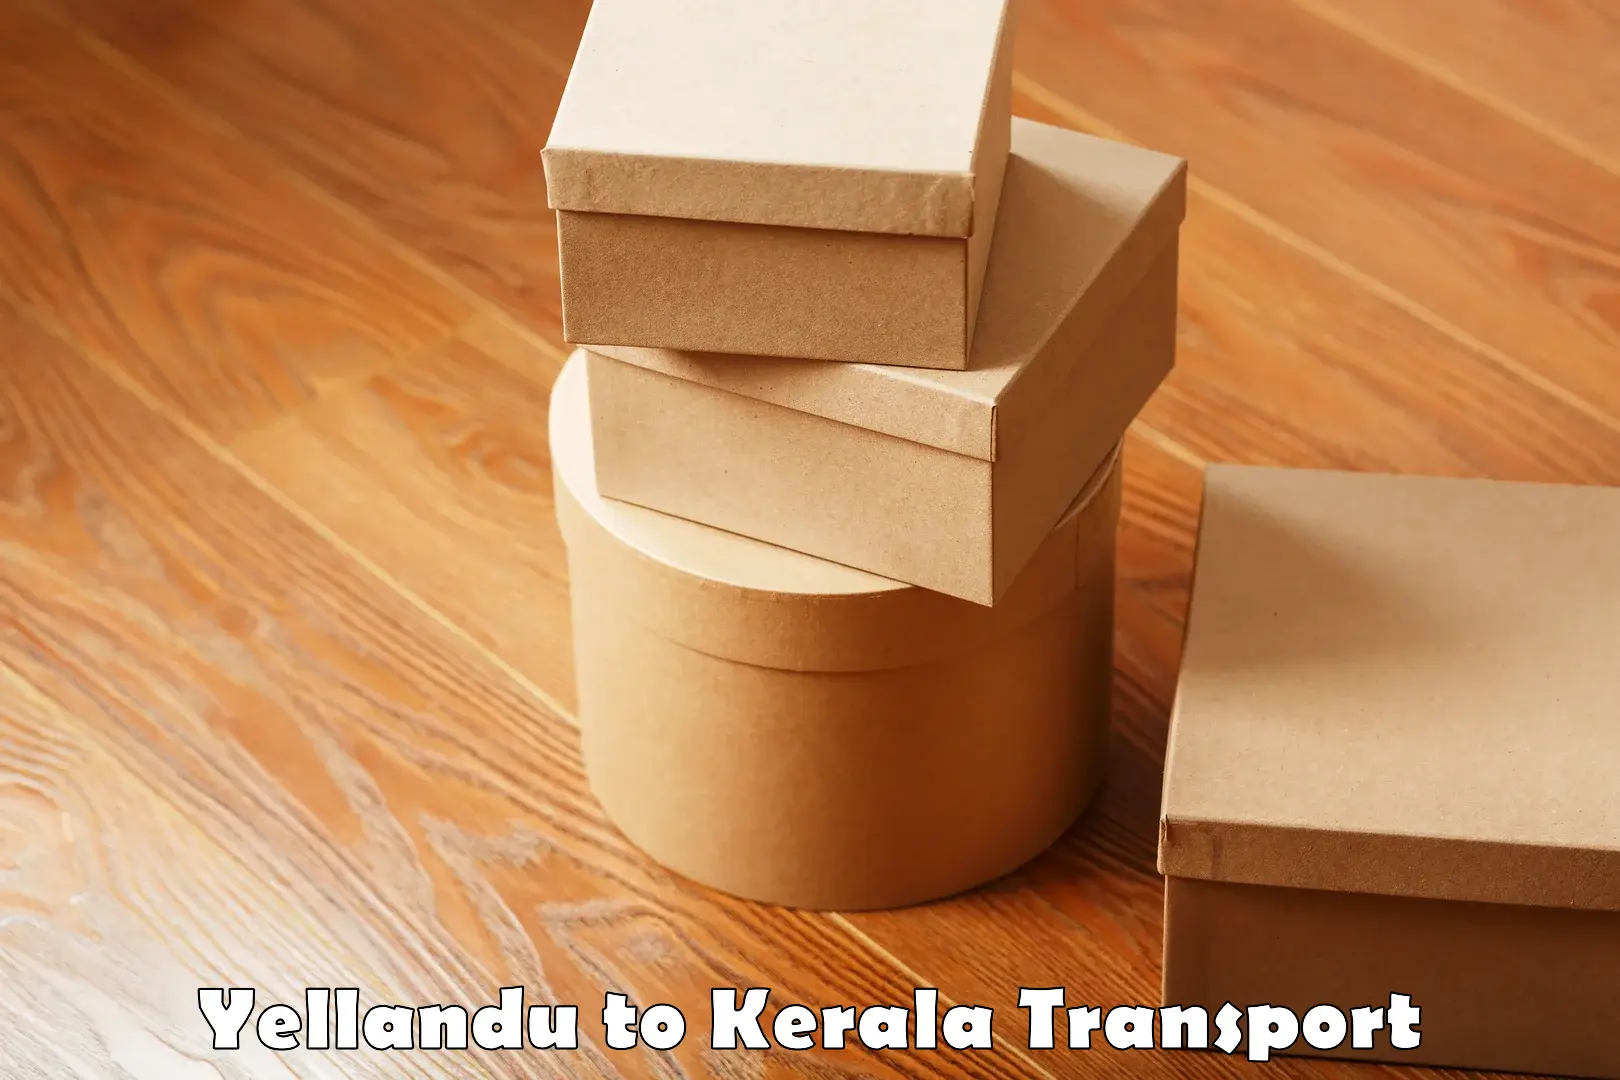 Nationwide transport services Yellandu to Kakkayam